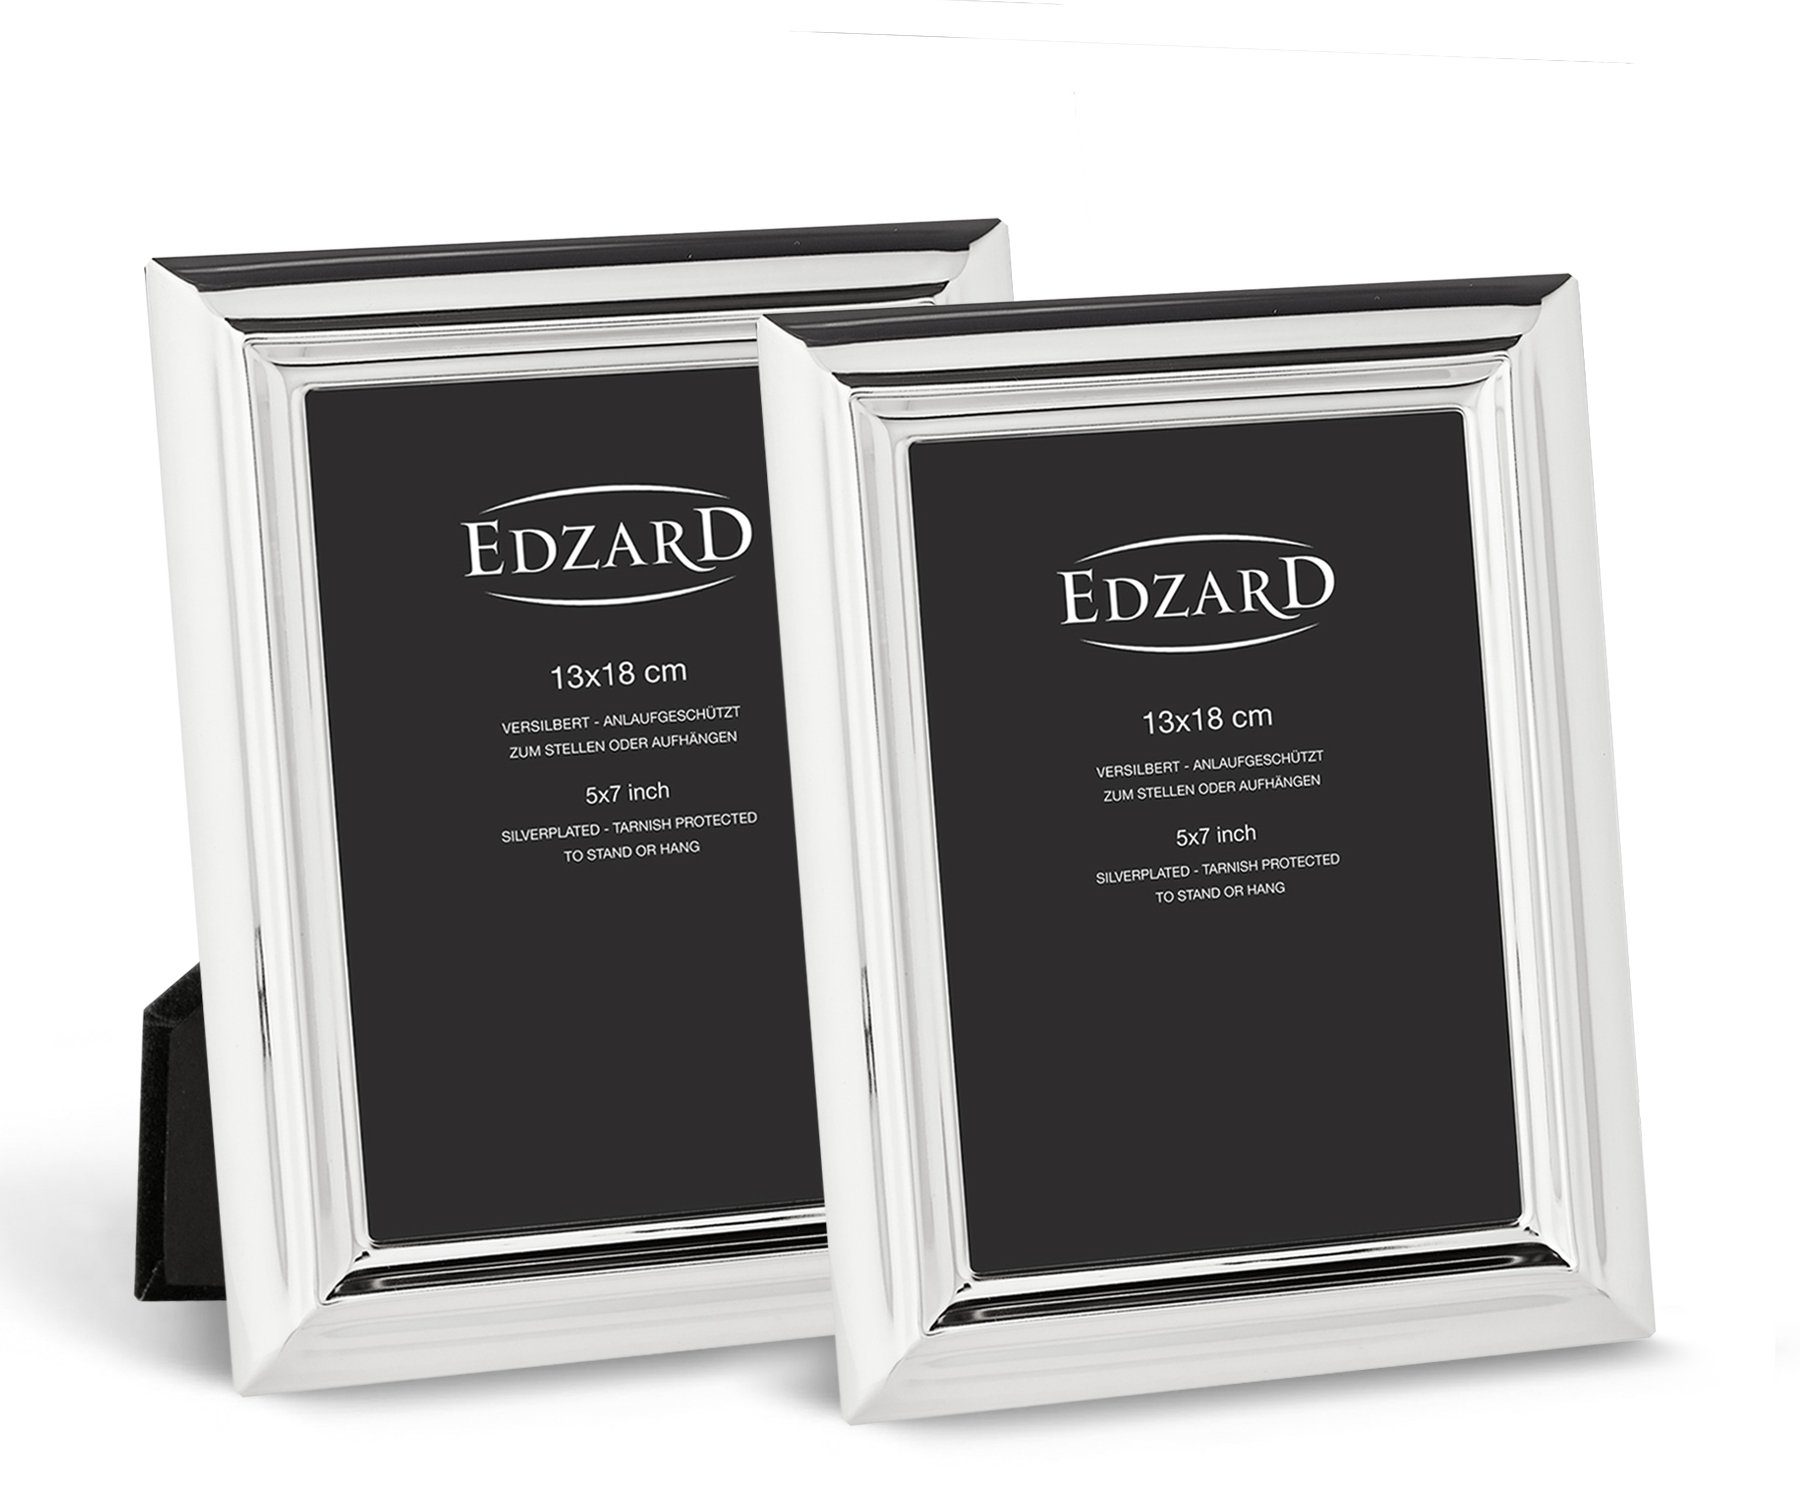 EDZARD Bilderrahmen Florenz, versilbert und anlaufgeschützt, 2er Set für 13x18 cm Foto